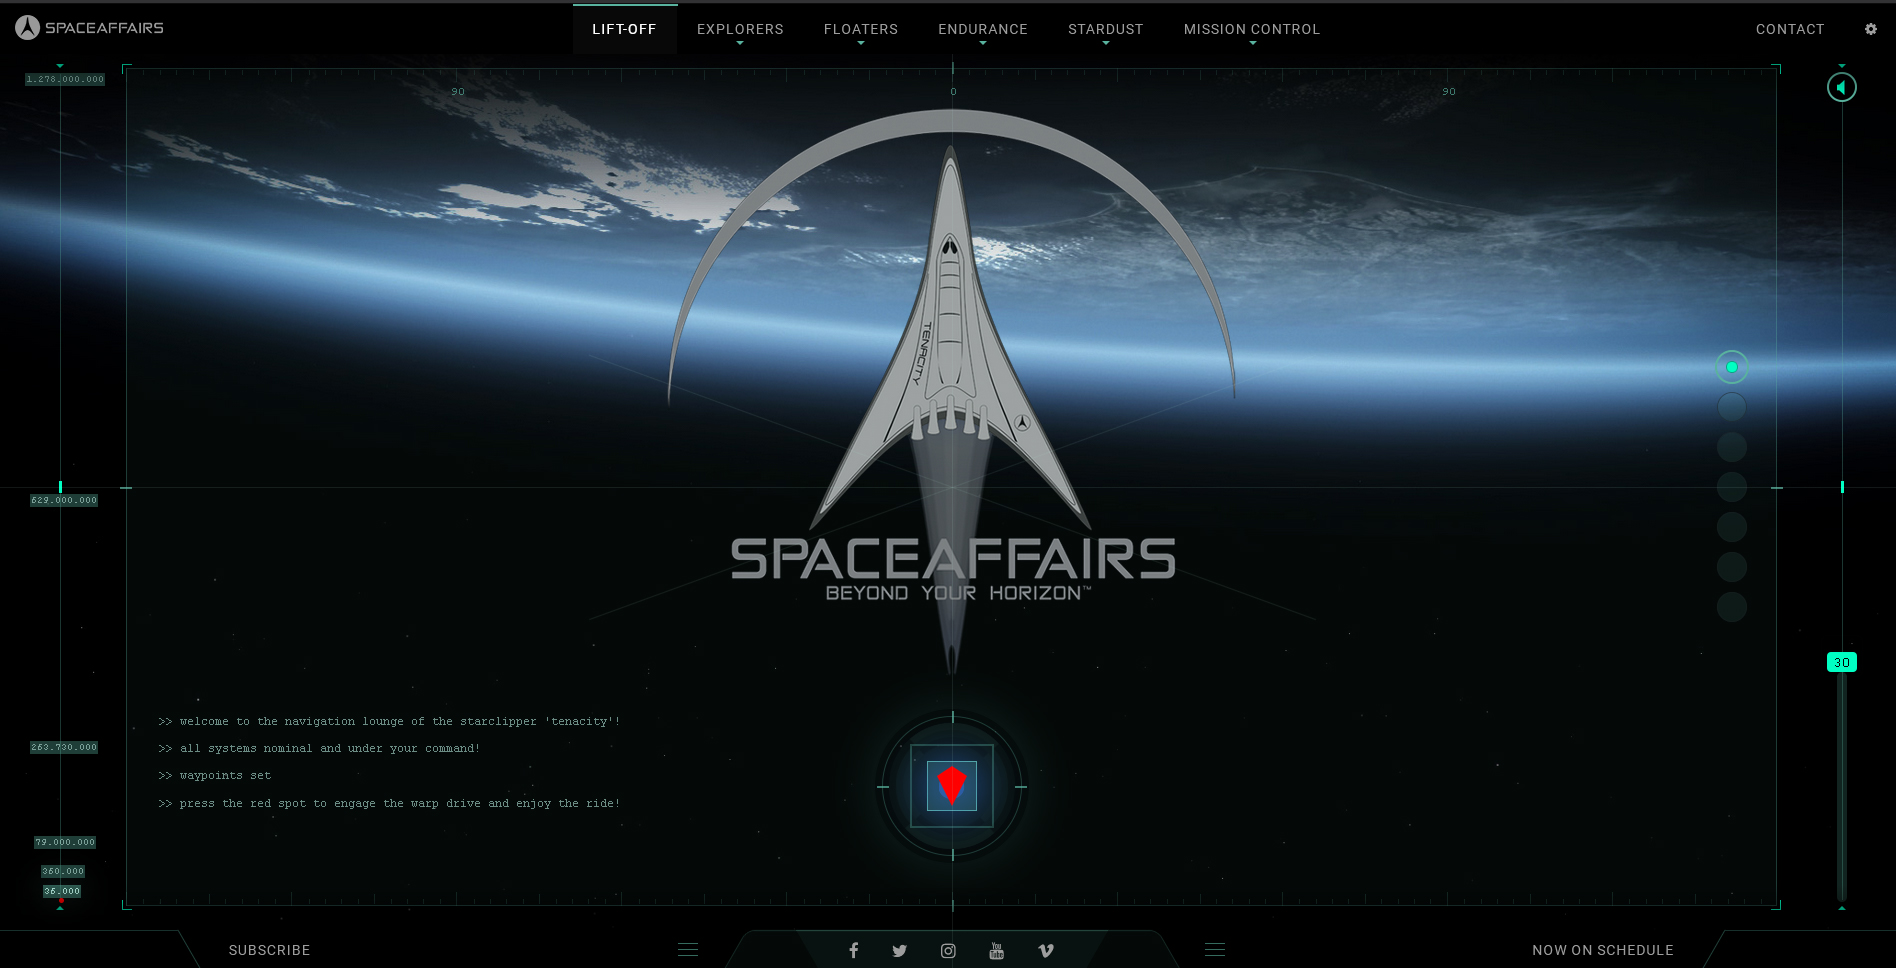 (c) Space-affairs.com